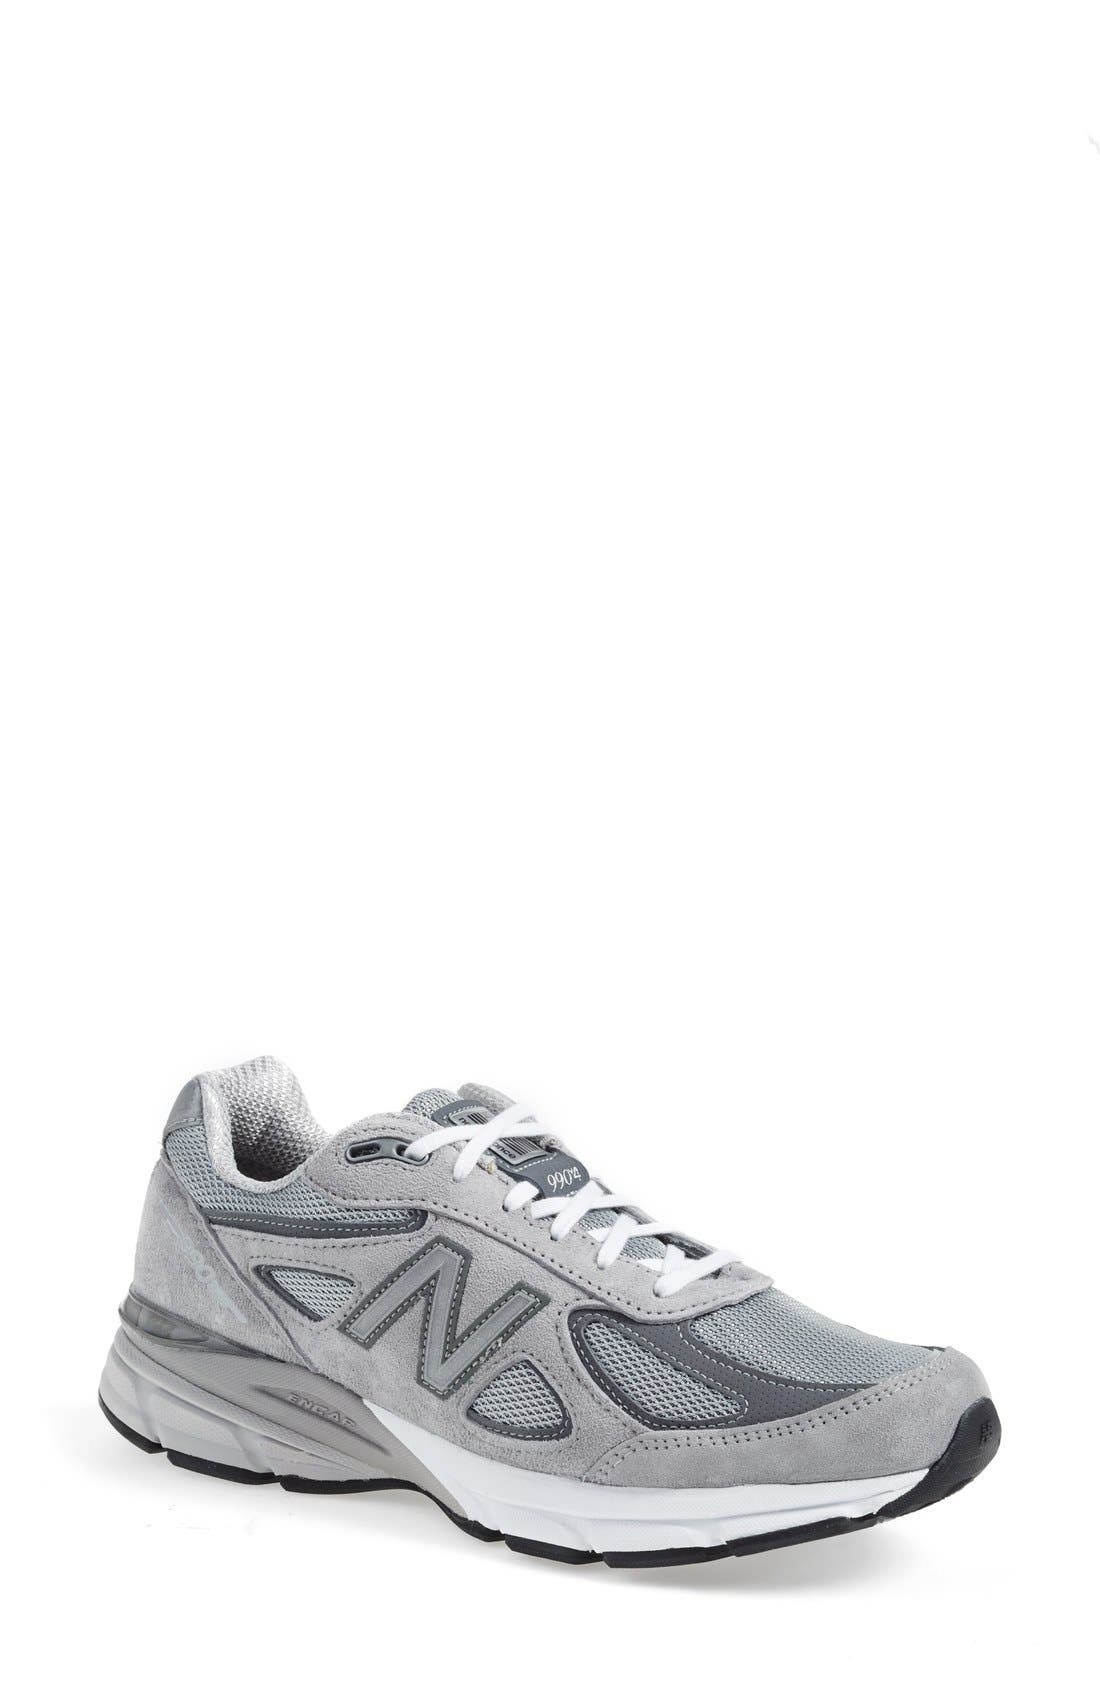 New Balance 990v4 Premium Running Shoe 